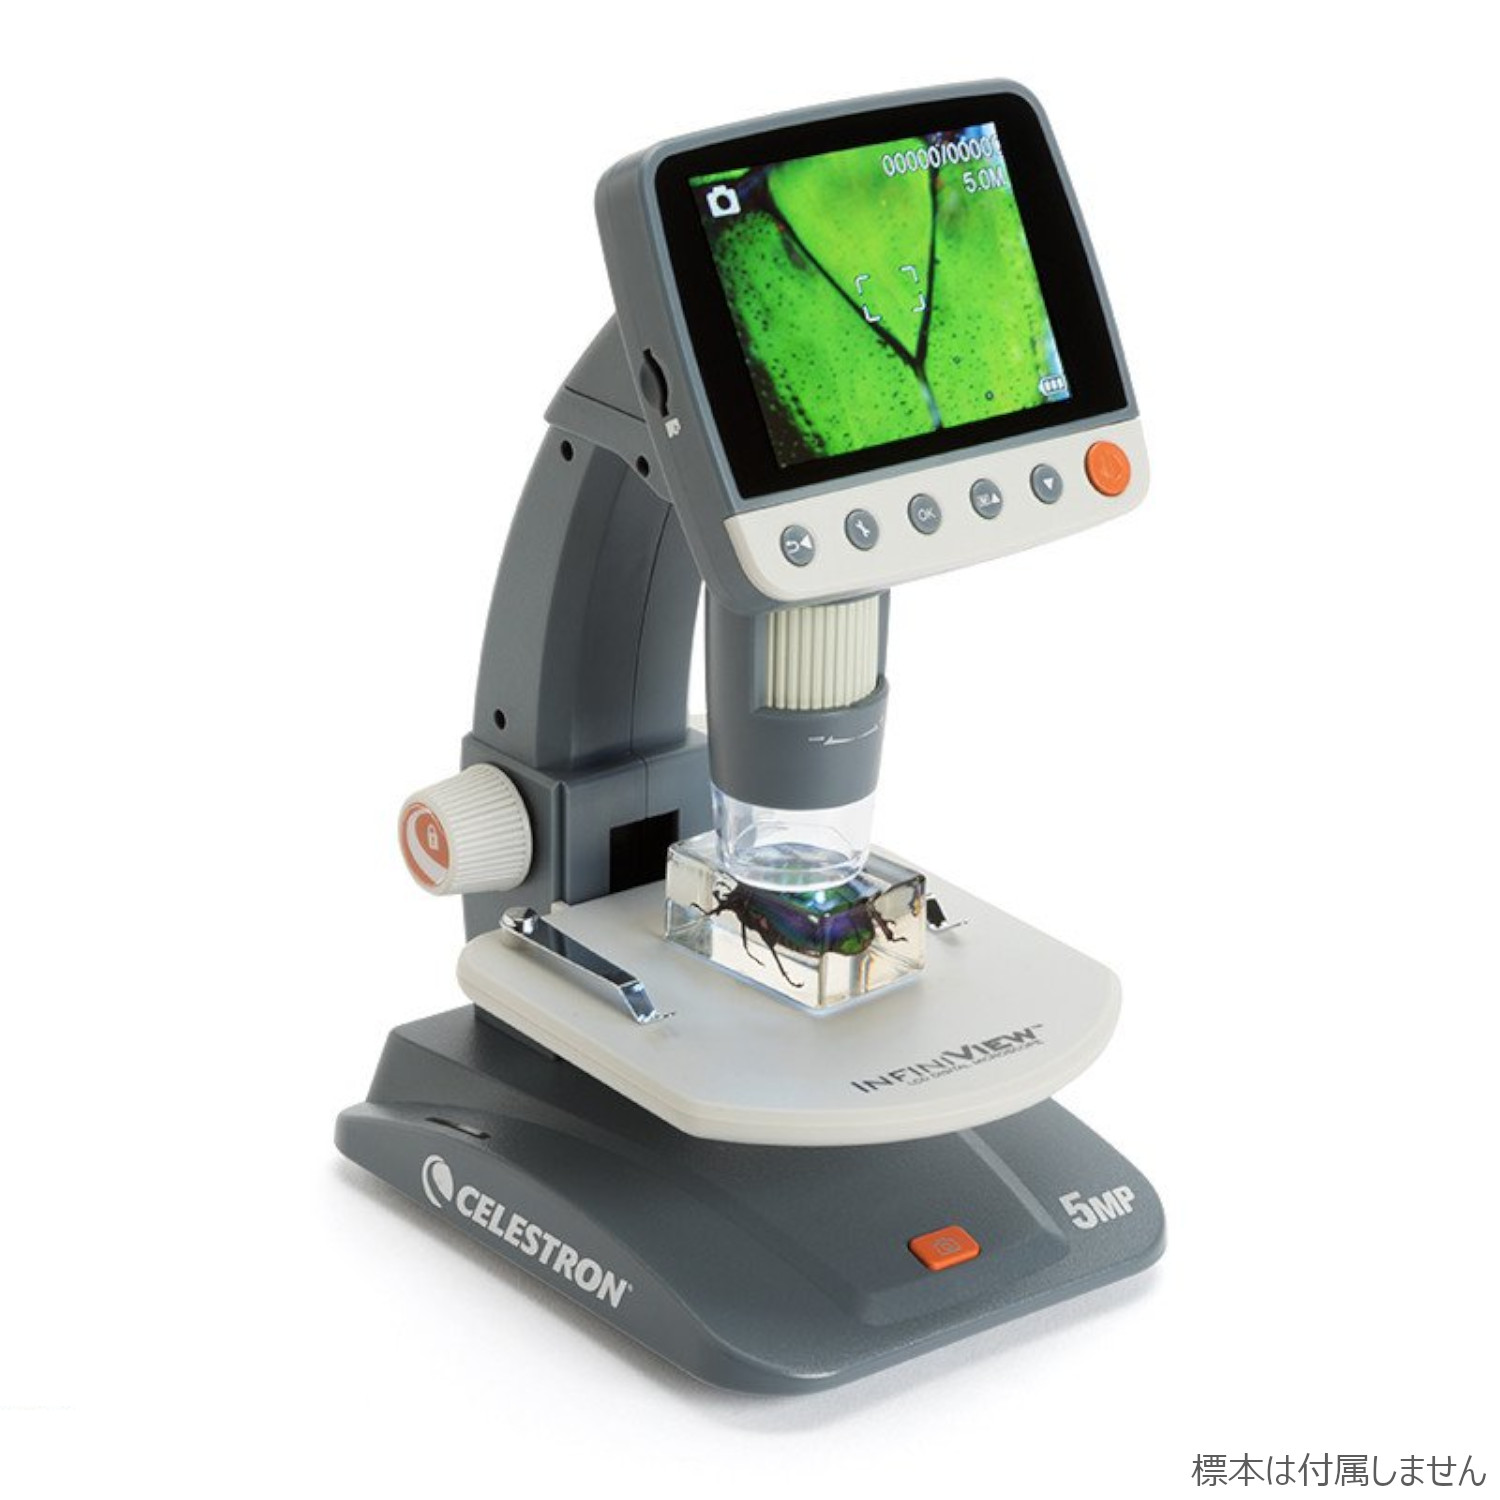 あなたにおすすめの商品 tomtomVixen 顕微鏡 双眼実体顕微鏡 SL